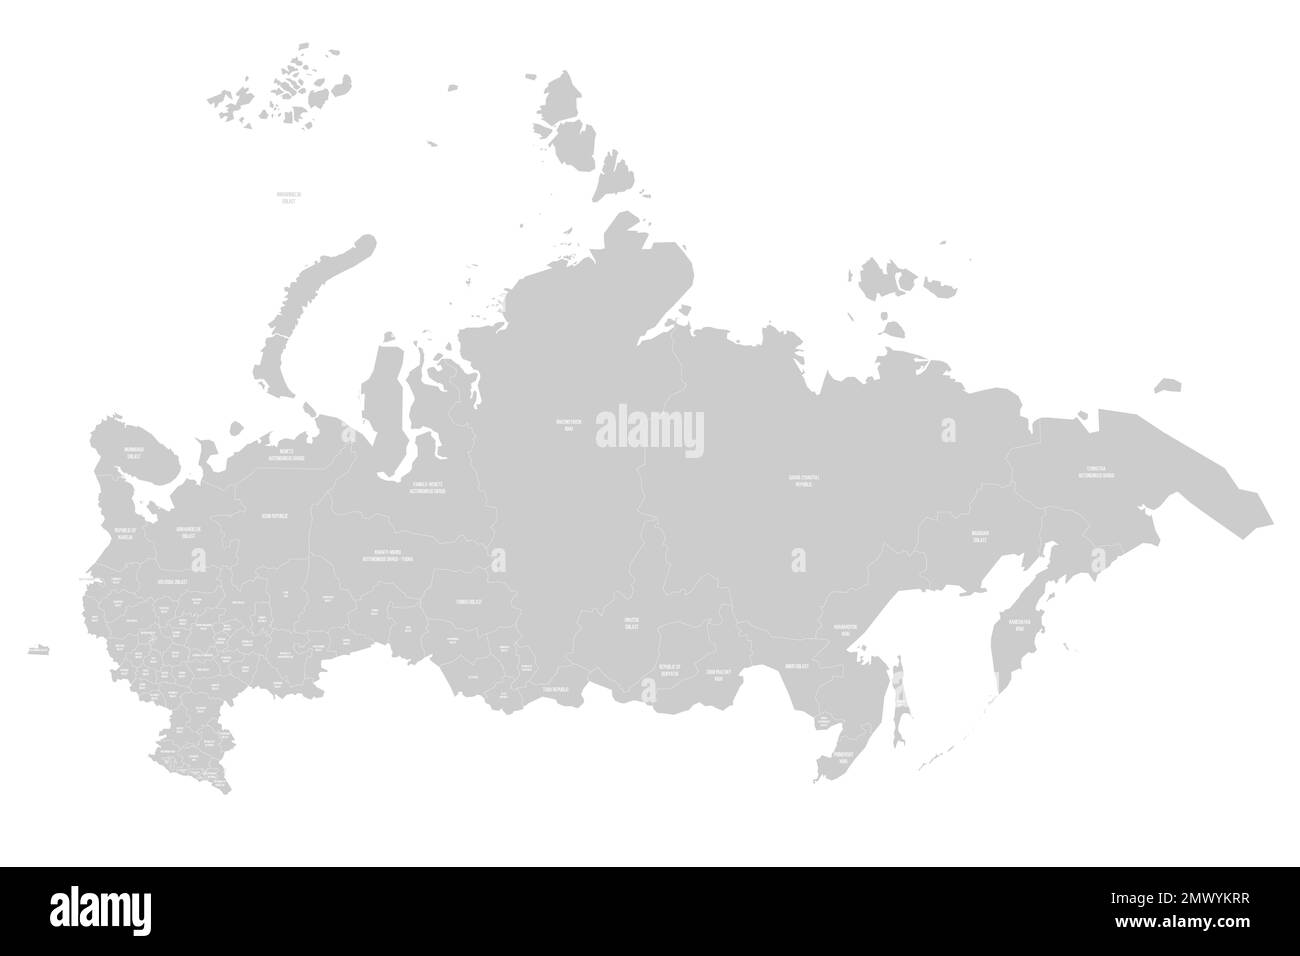 Russia mappa politica delle divisioni amministrative - oblasti, repubbliche, okrums autonomi, krais, oblast autonomi e 2 città federali di Mosca e. Illustrazione Vettoriale